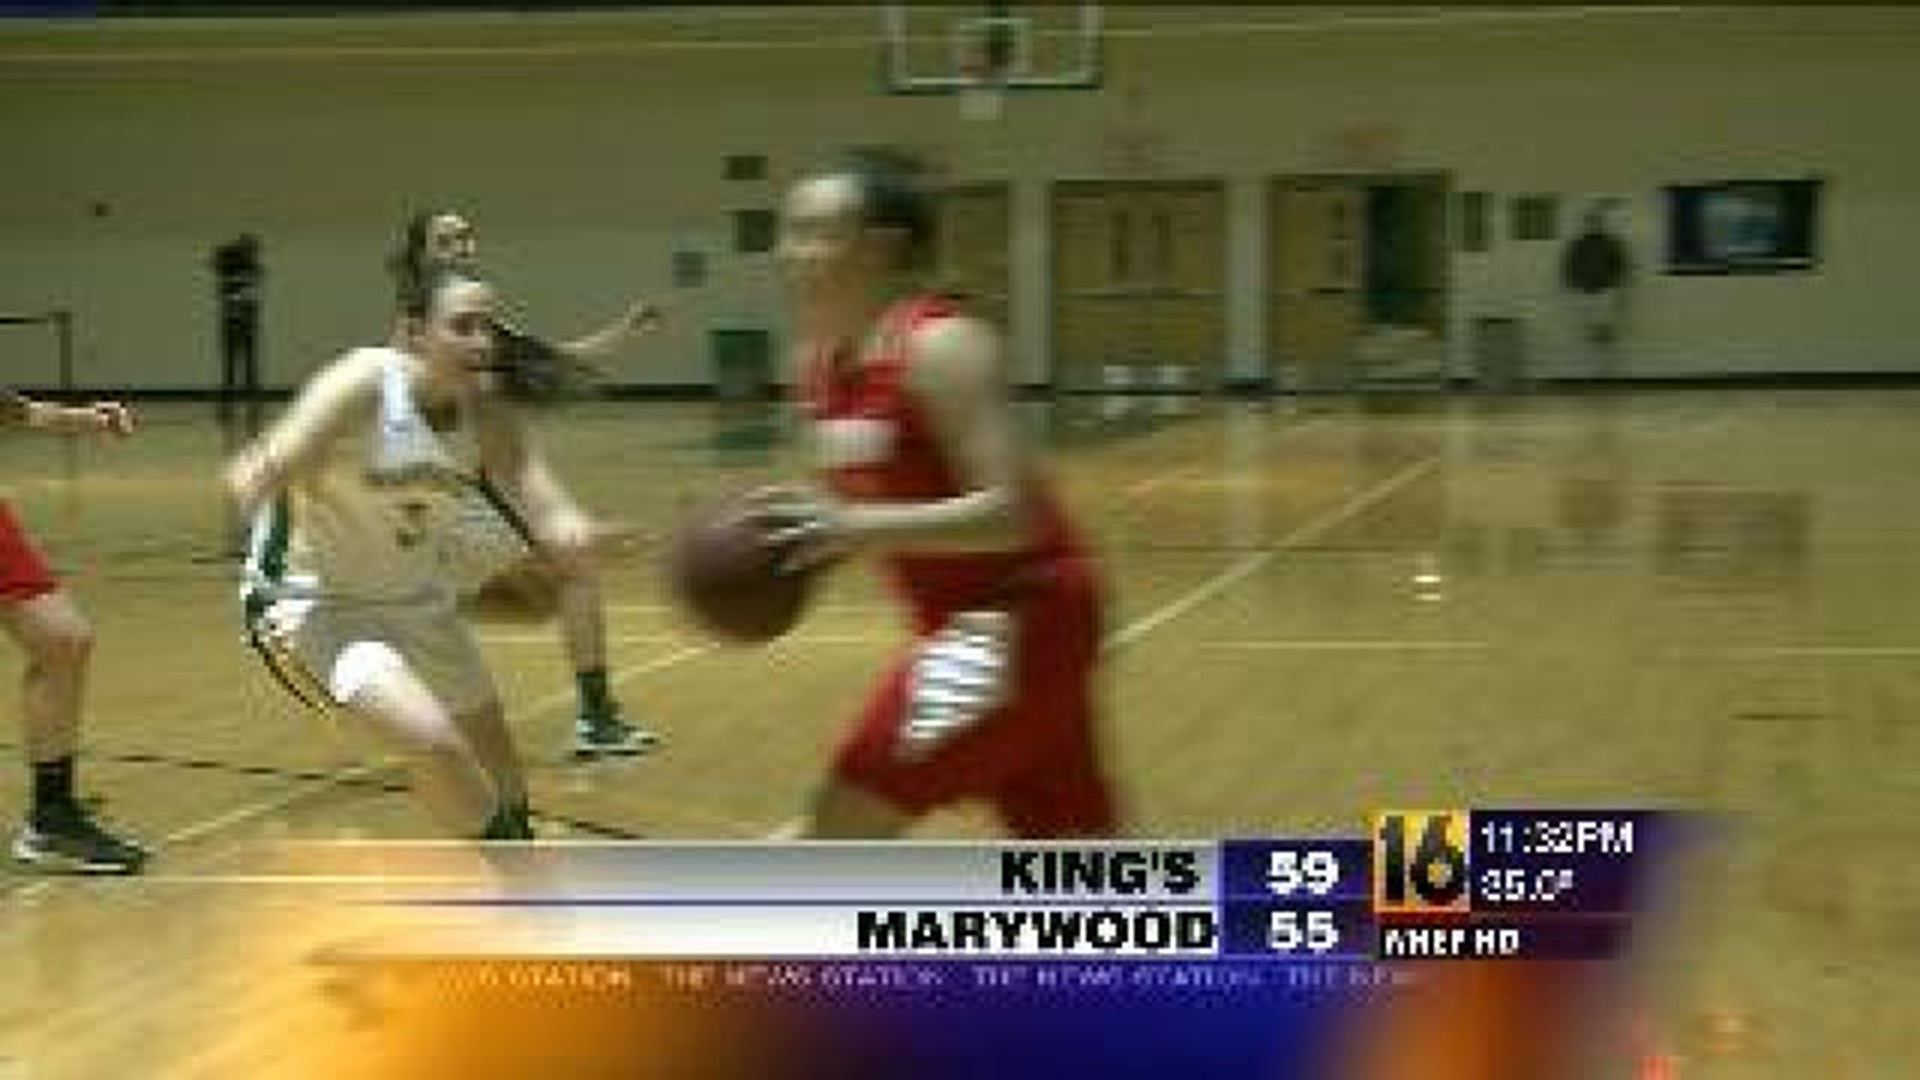 King's vs Marywood